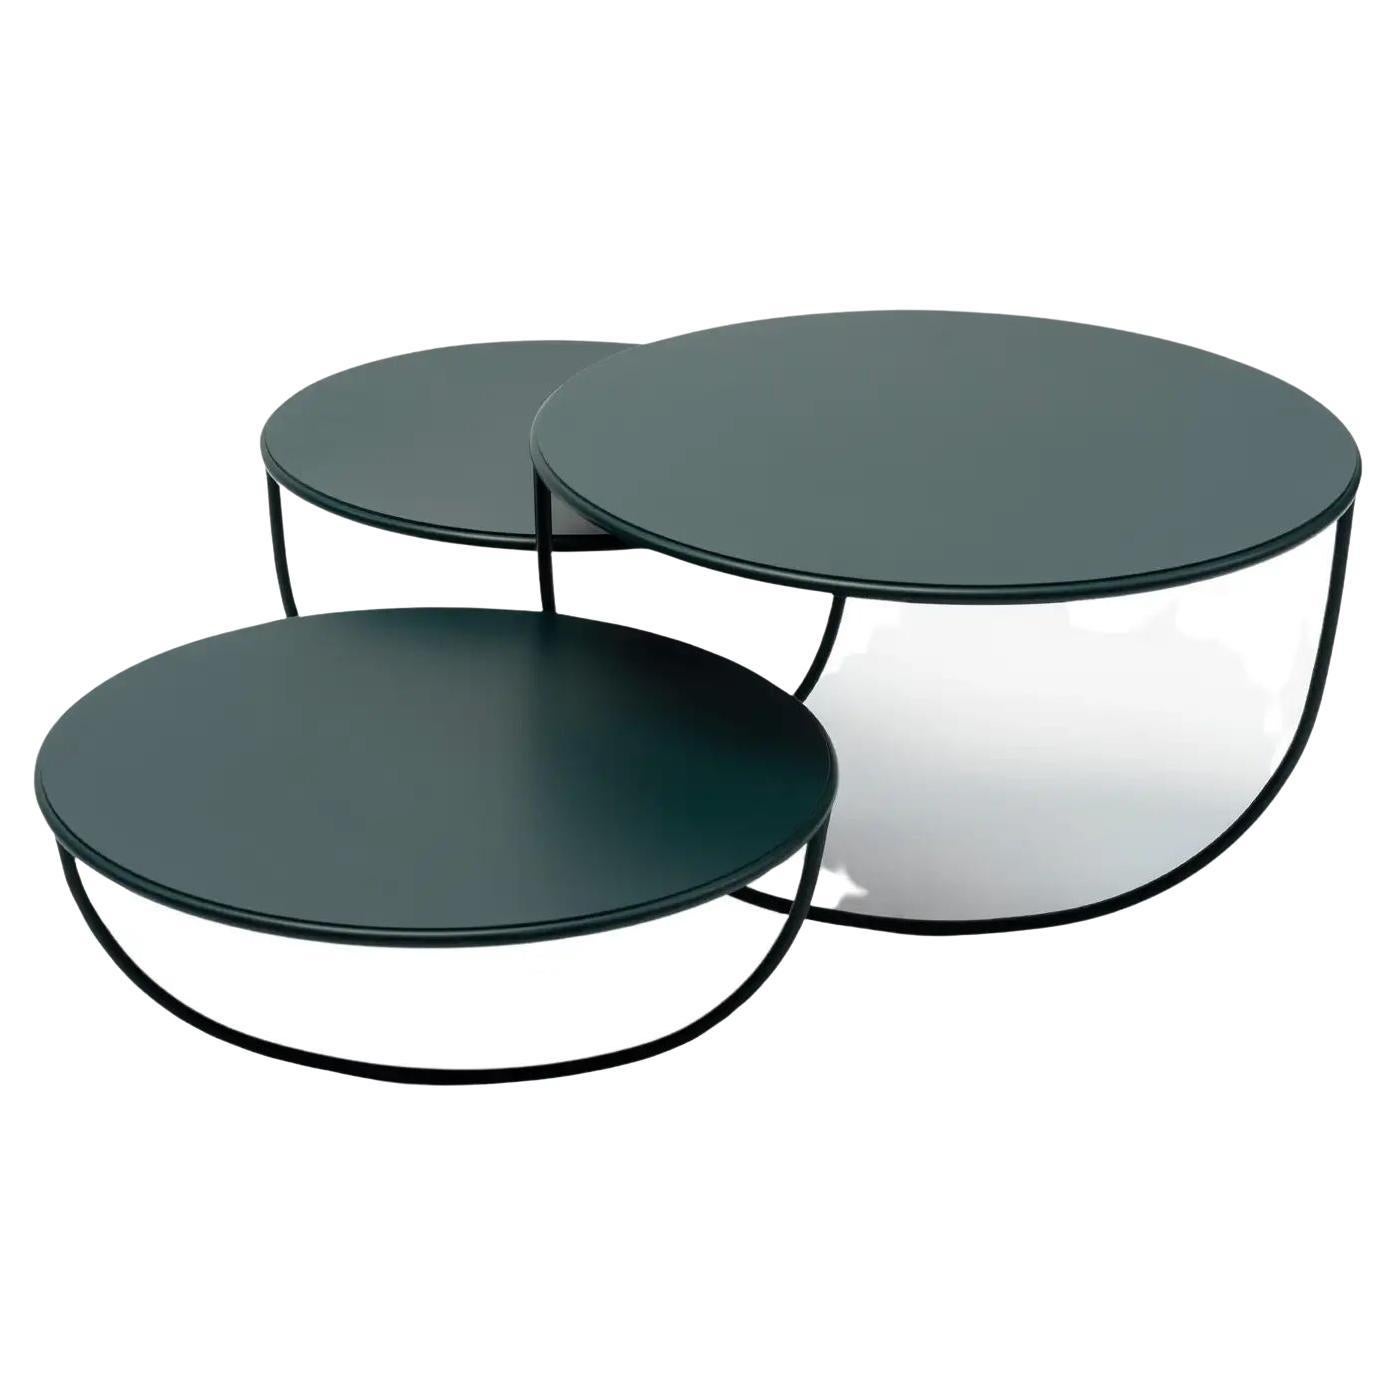 Table tripo La Manufacture-Paris conçue par Nendo, en stock